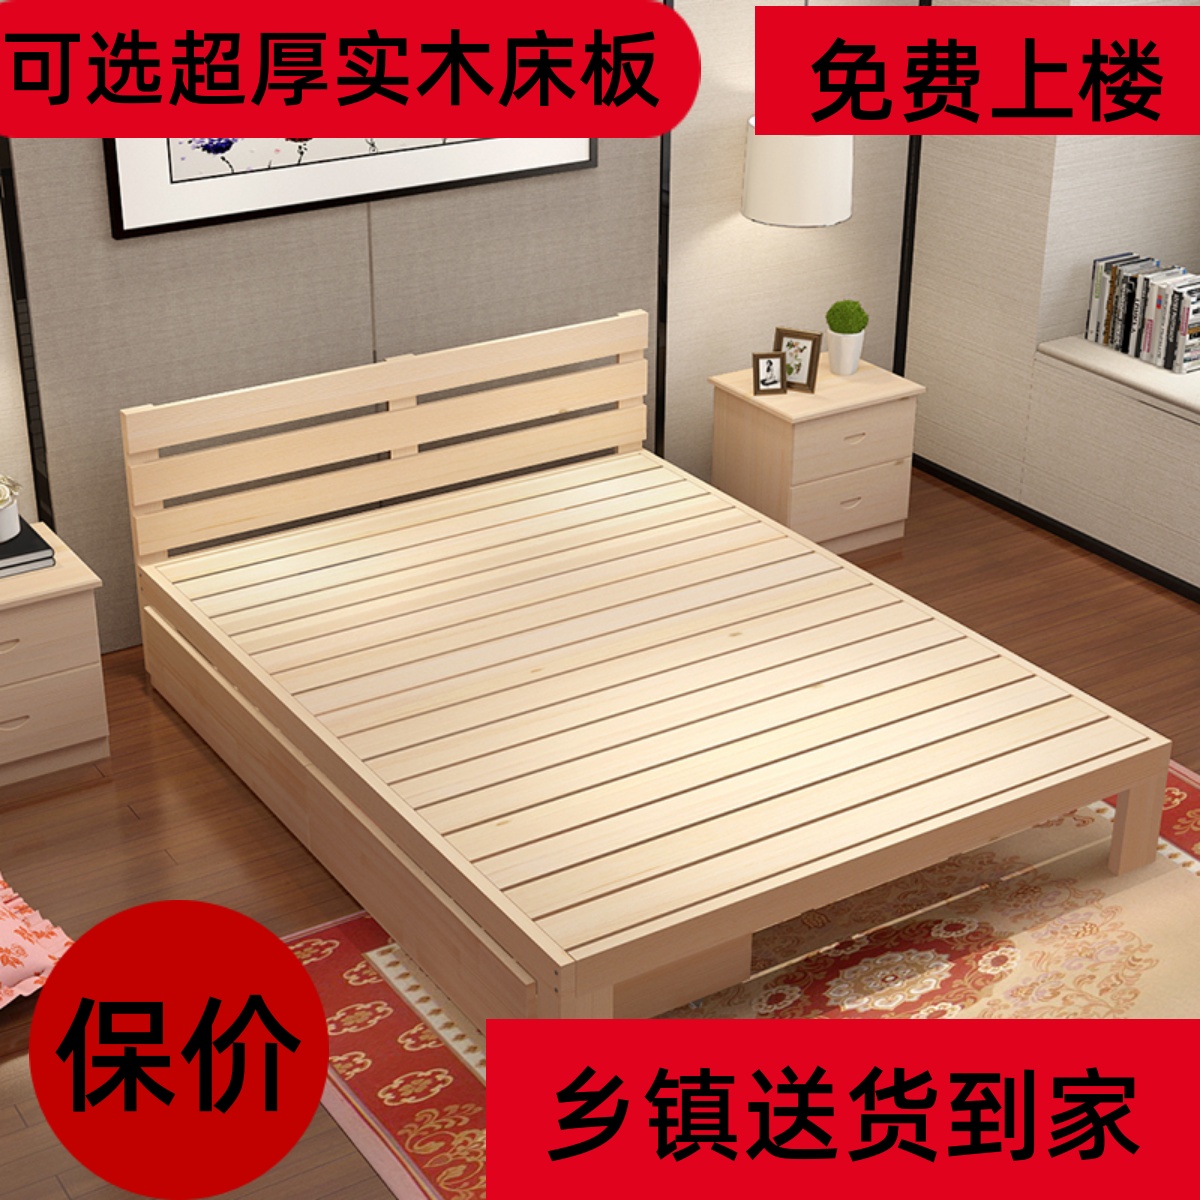 1.5 床实木床松木榻榻米床单人床双人床成人床可定制1.2 1.8 包邮